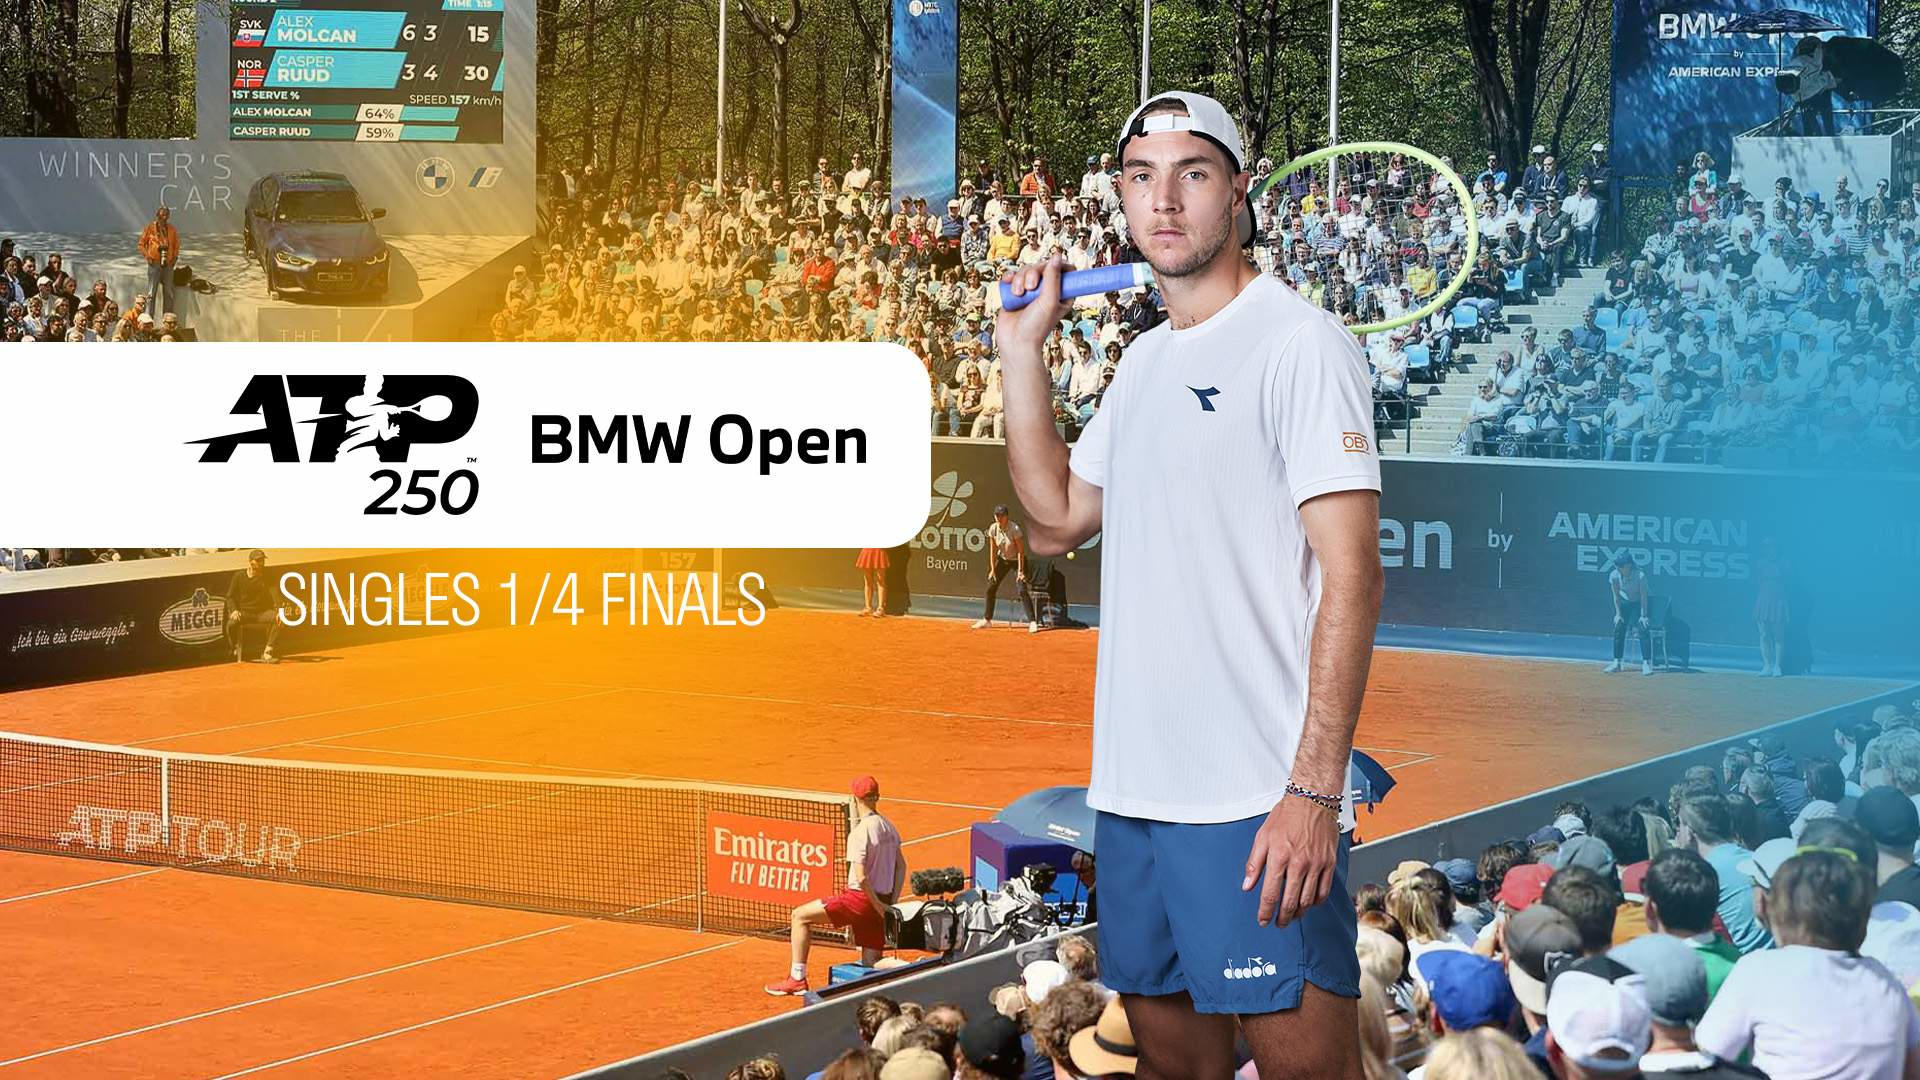 ATP 250 Munich. Singles 1/4 Finals